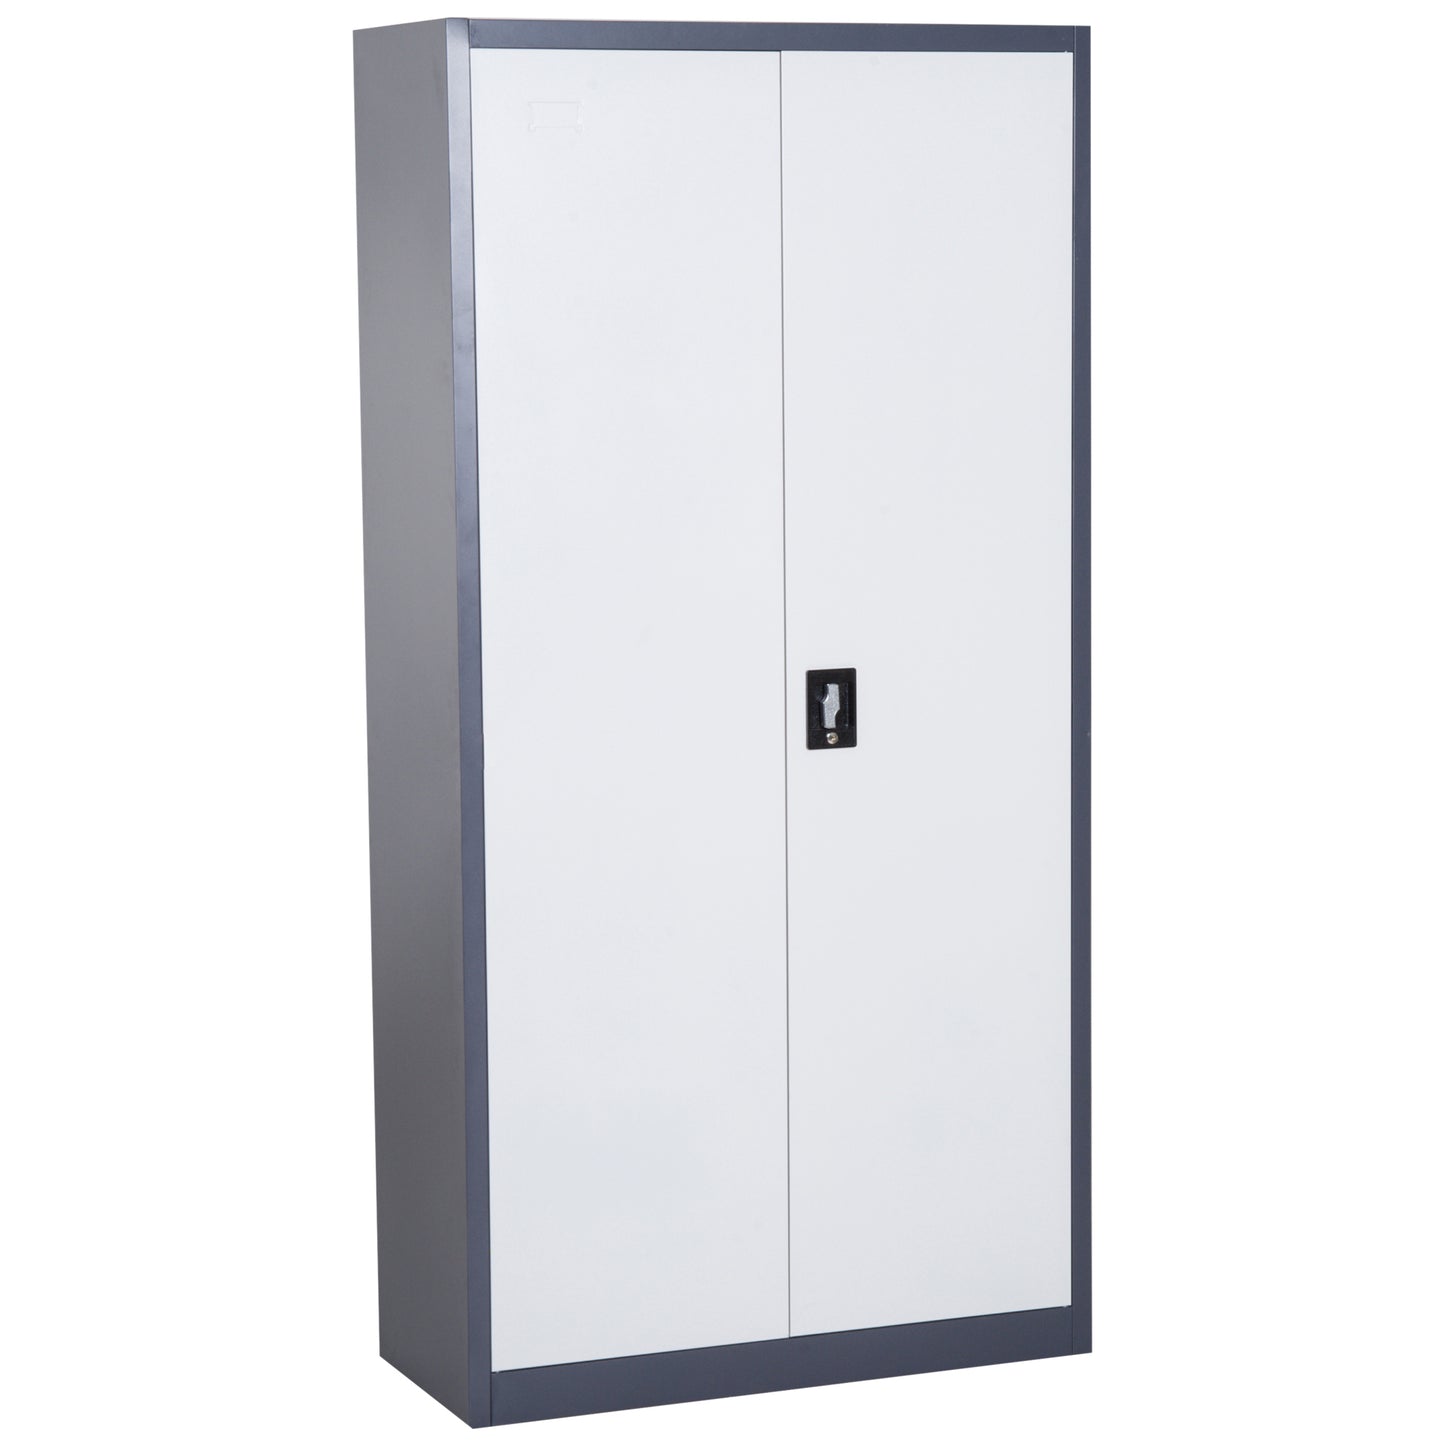 HOMCOM Lockable Filing Cabinet, Adjustable Shelf, CRS-White/Black